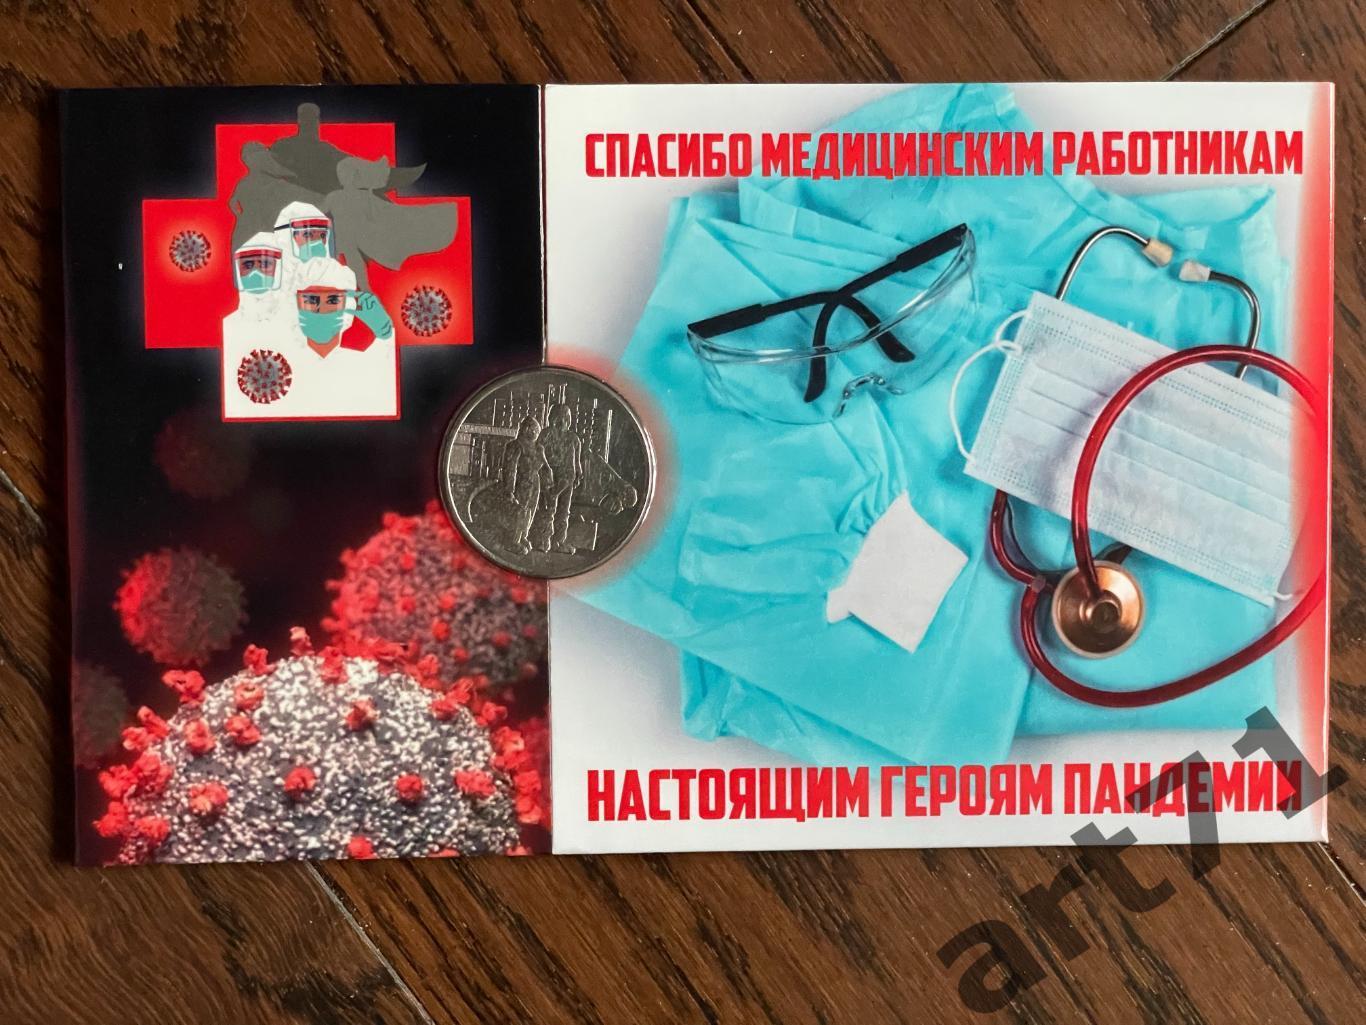 25 рублей РФ, 2020. Настоящим героям пандемии.